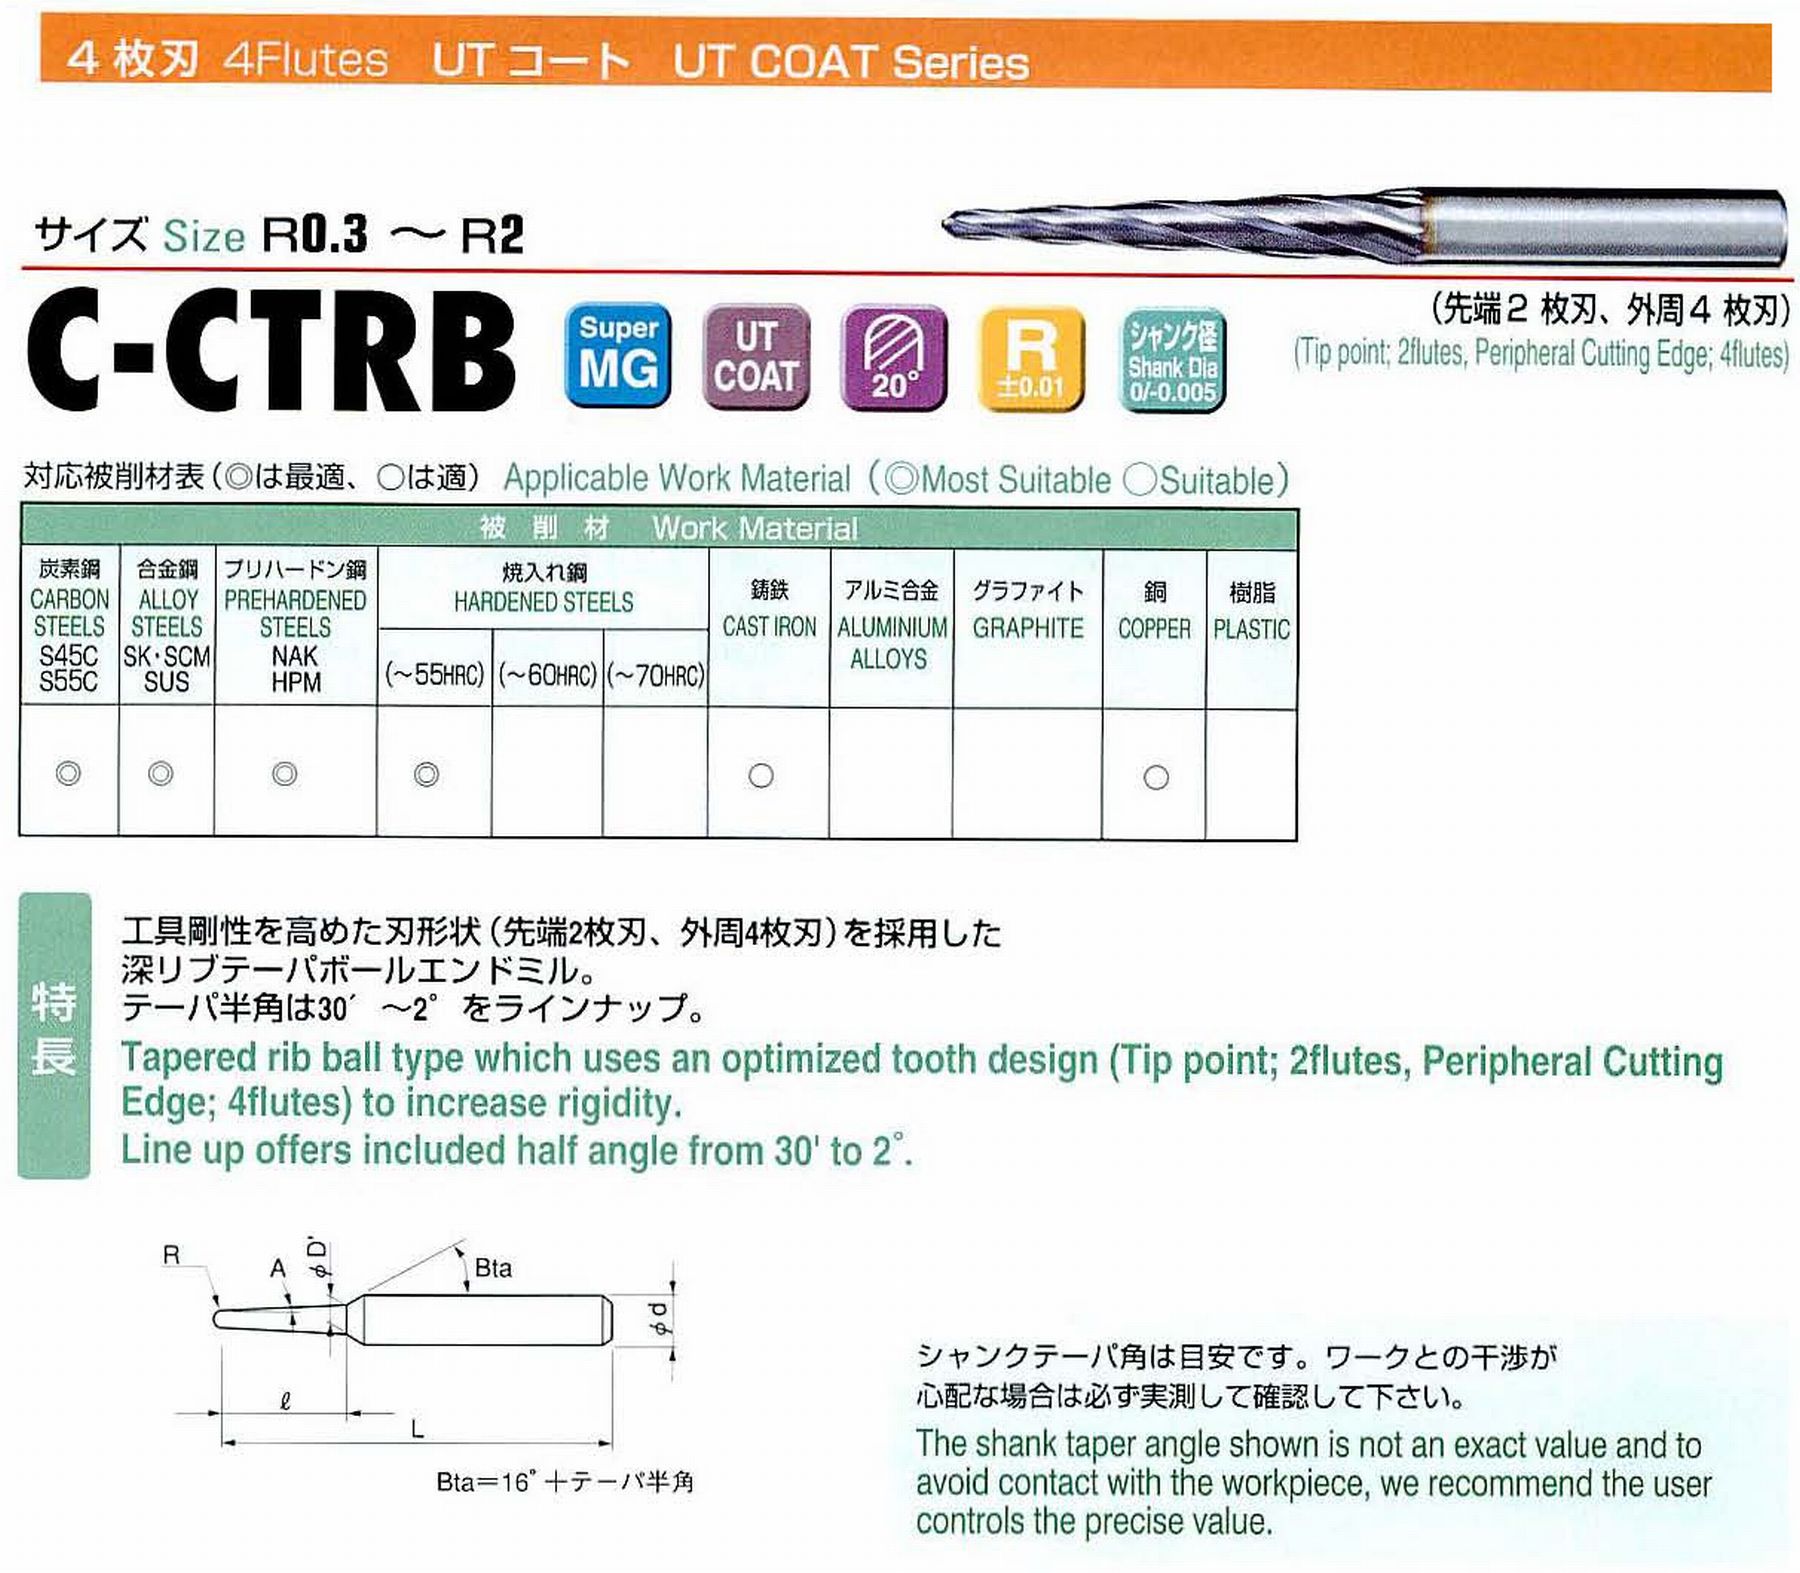 ユニオンツール 4枚刃 C-CTRB4012-16-1 ボール半径R0.6 テーパ半角30′ 刃長16 大端径1.47 全長55 シャンク径4